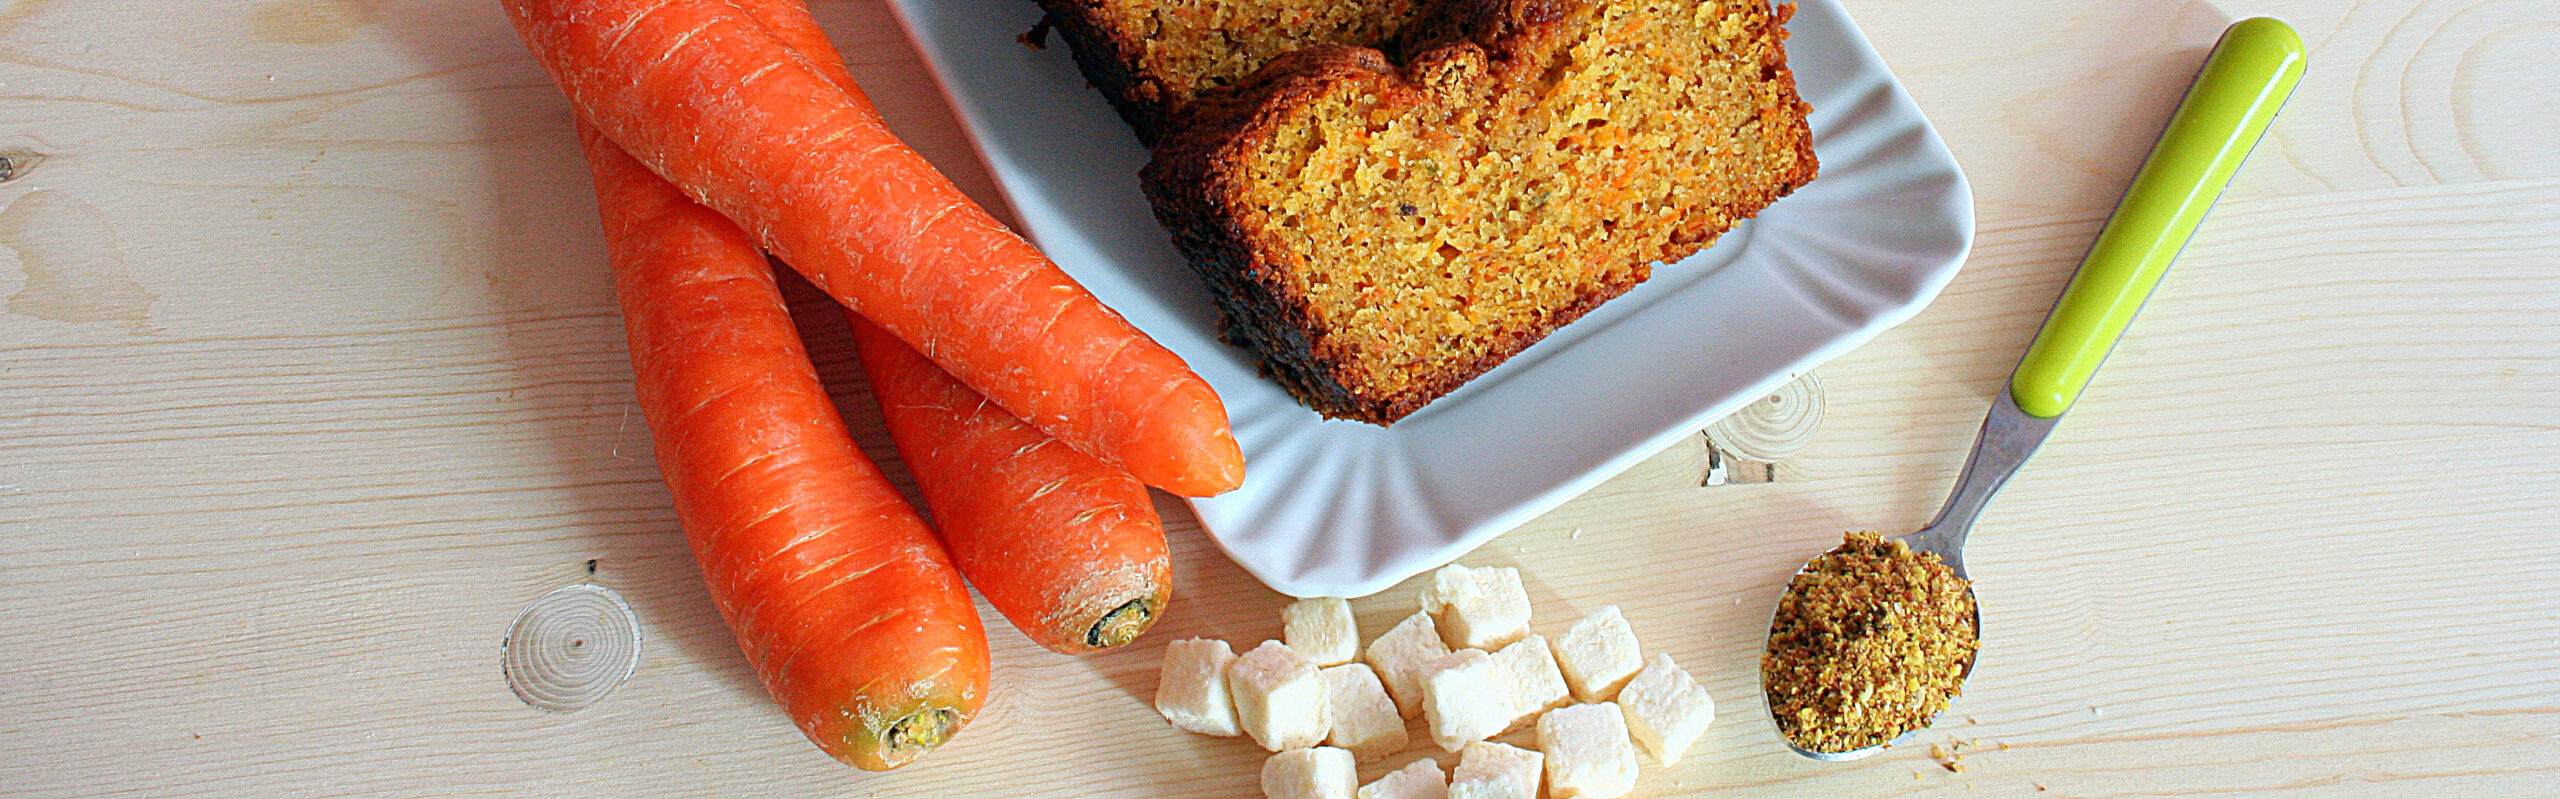 Ricetta dolce: plumcake per colazione con carote e cocco